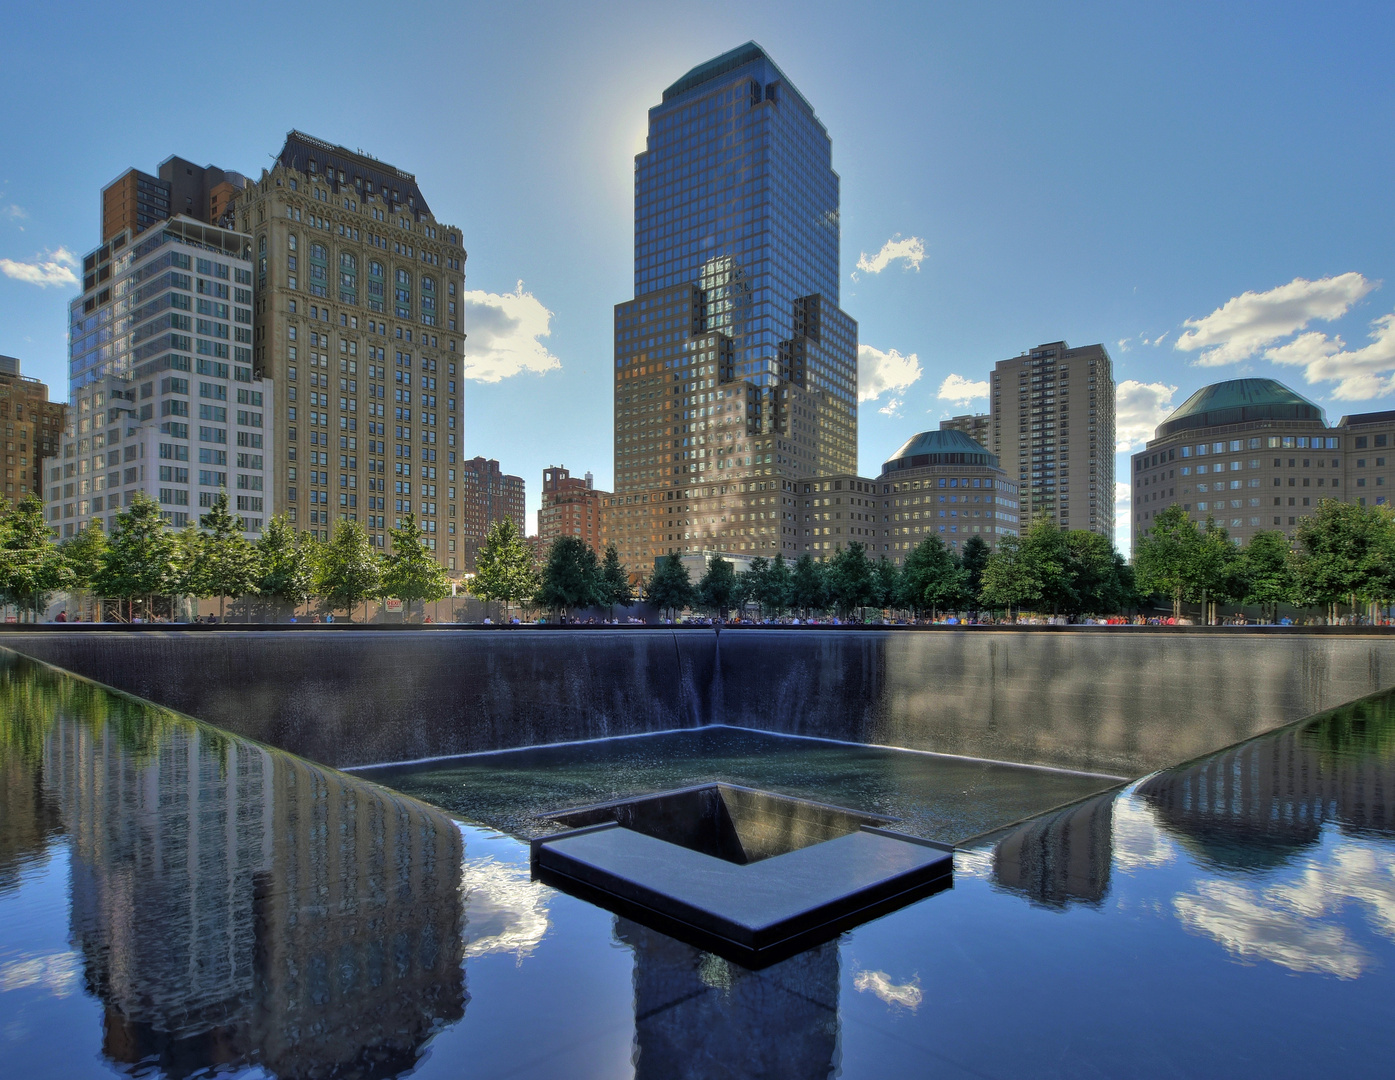 WTC Memorial - 11.09.2001